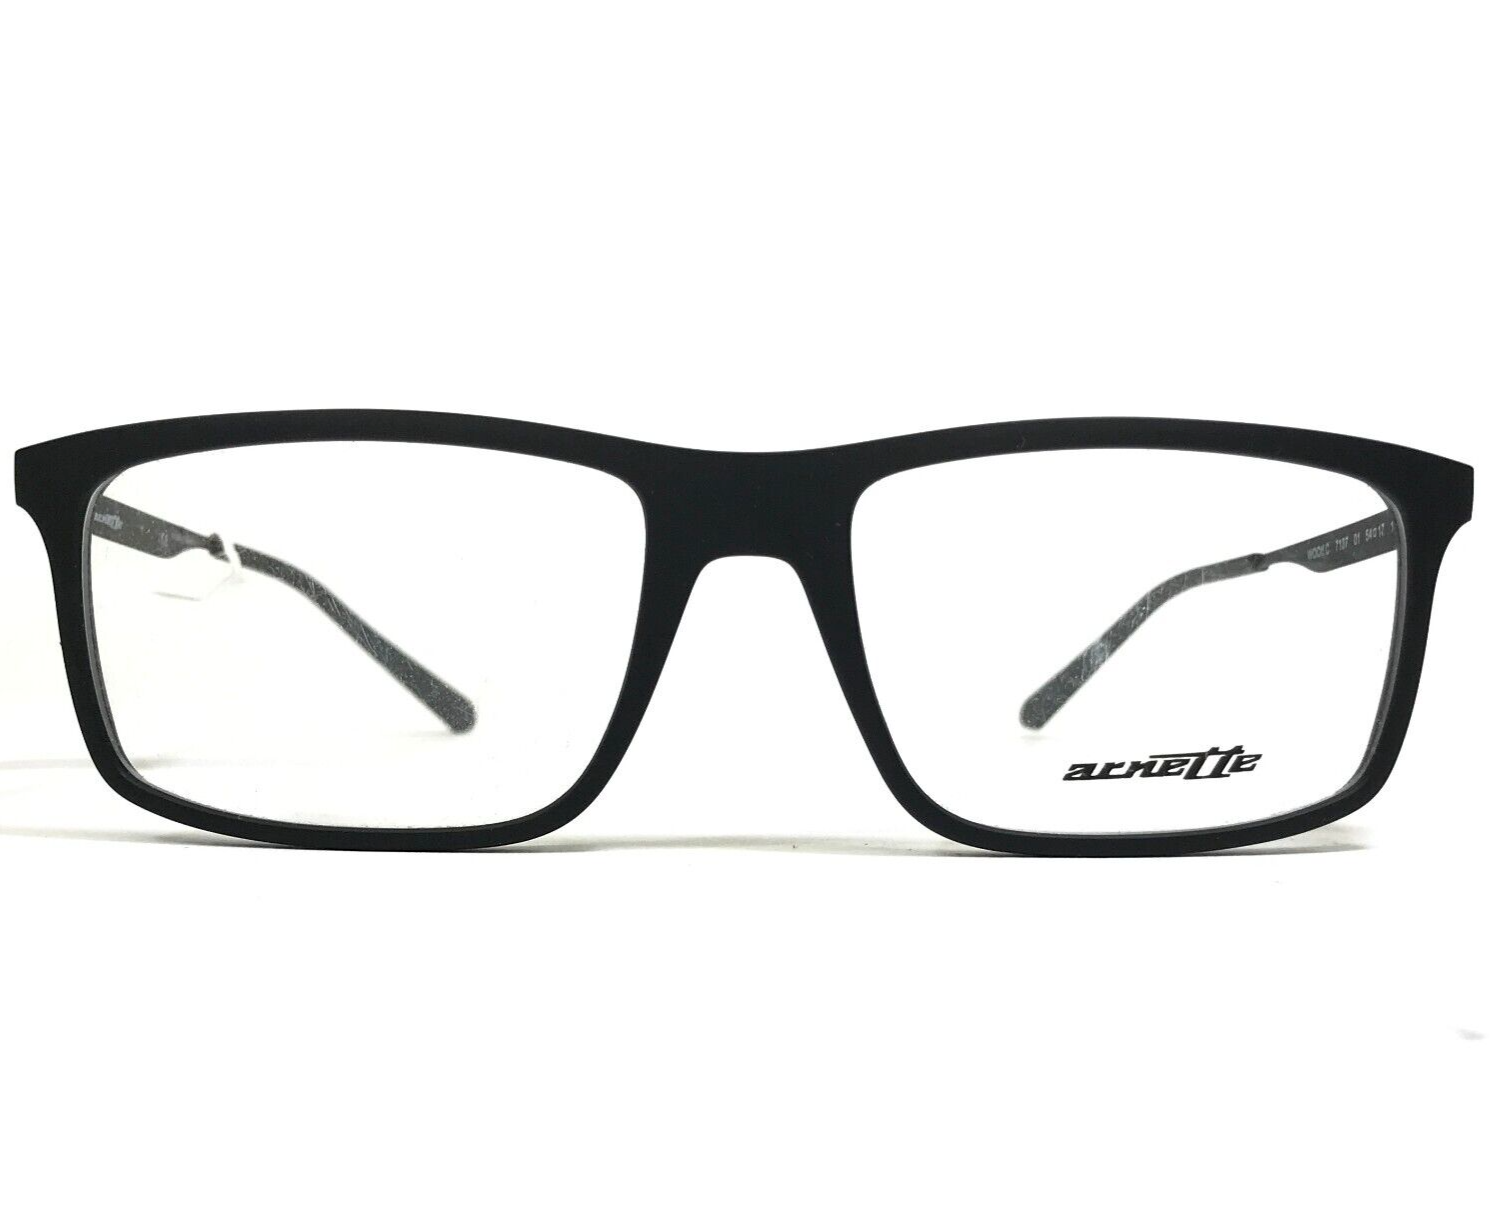 Primary image for Arnette Eyeglasses Frames WOOt! C 7137 01 Matte Black Square Full Rim 54-17-140